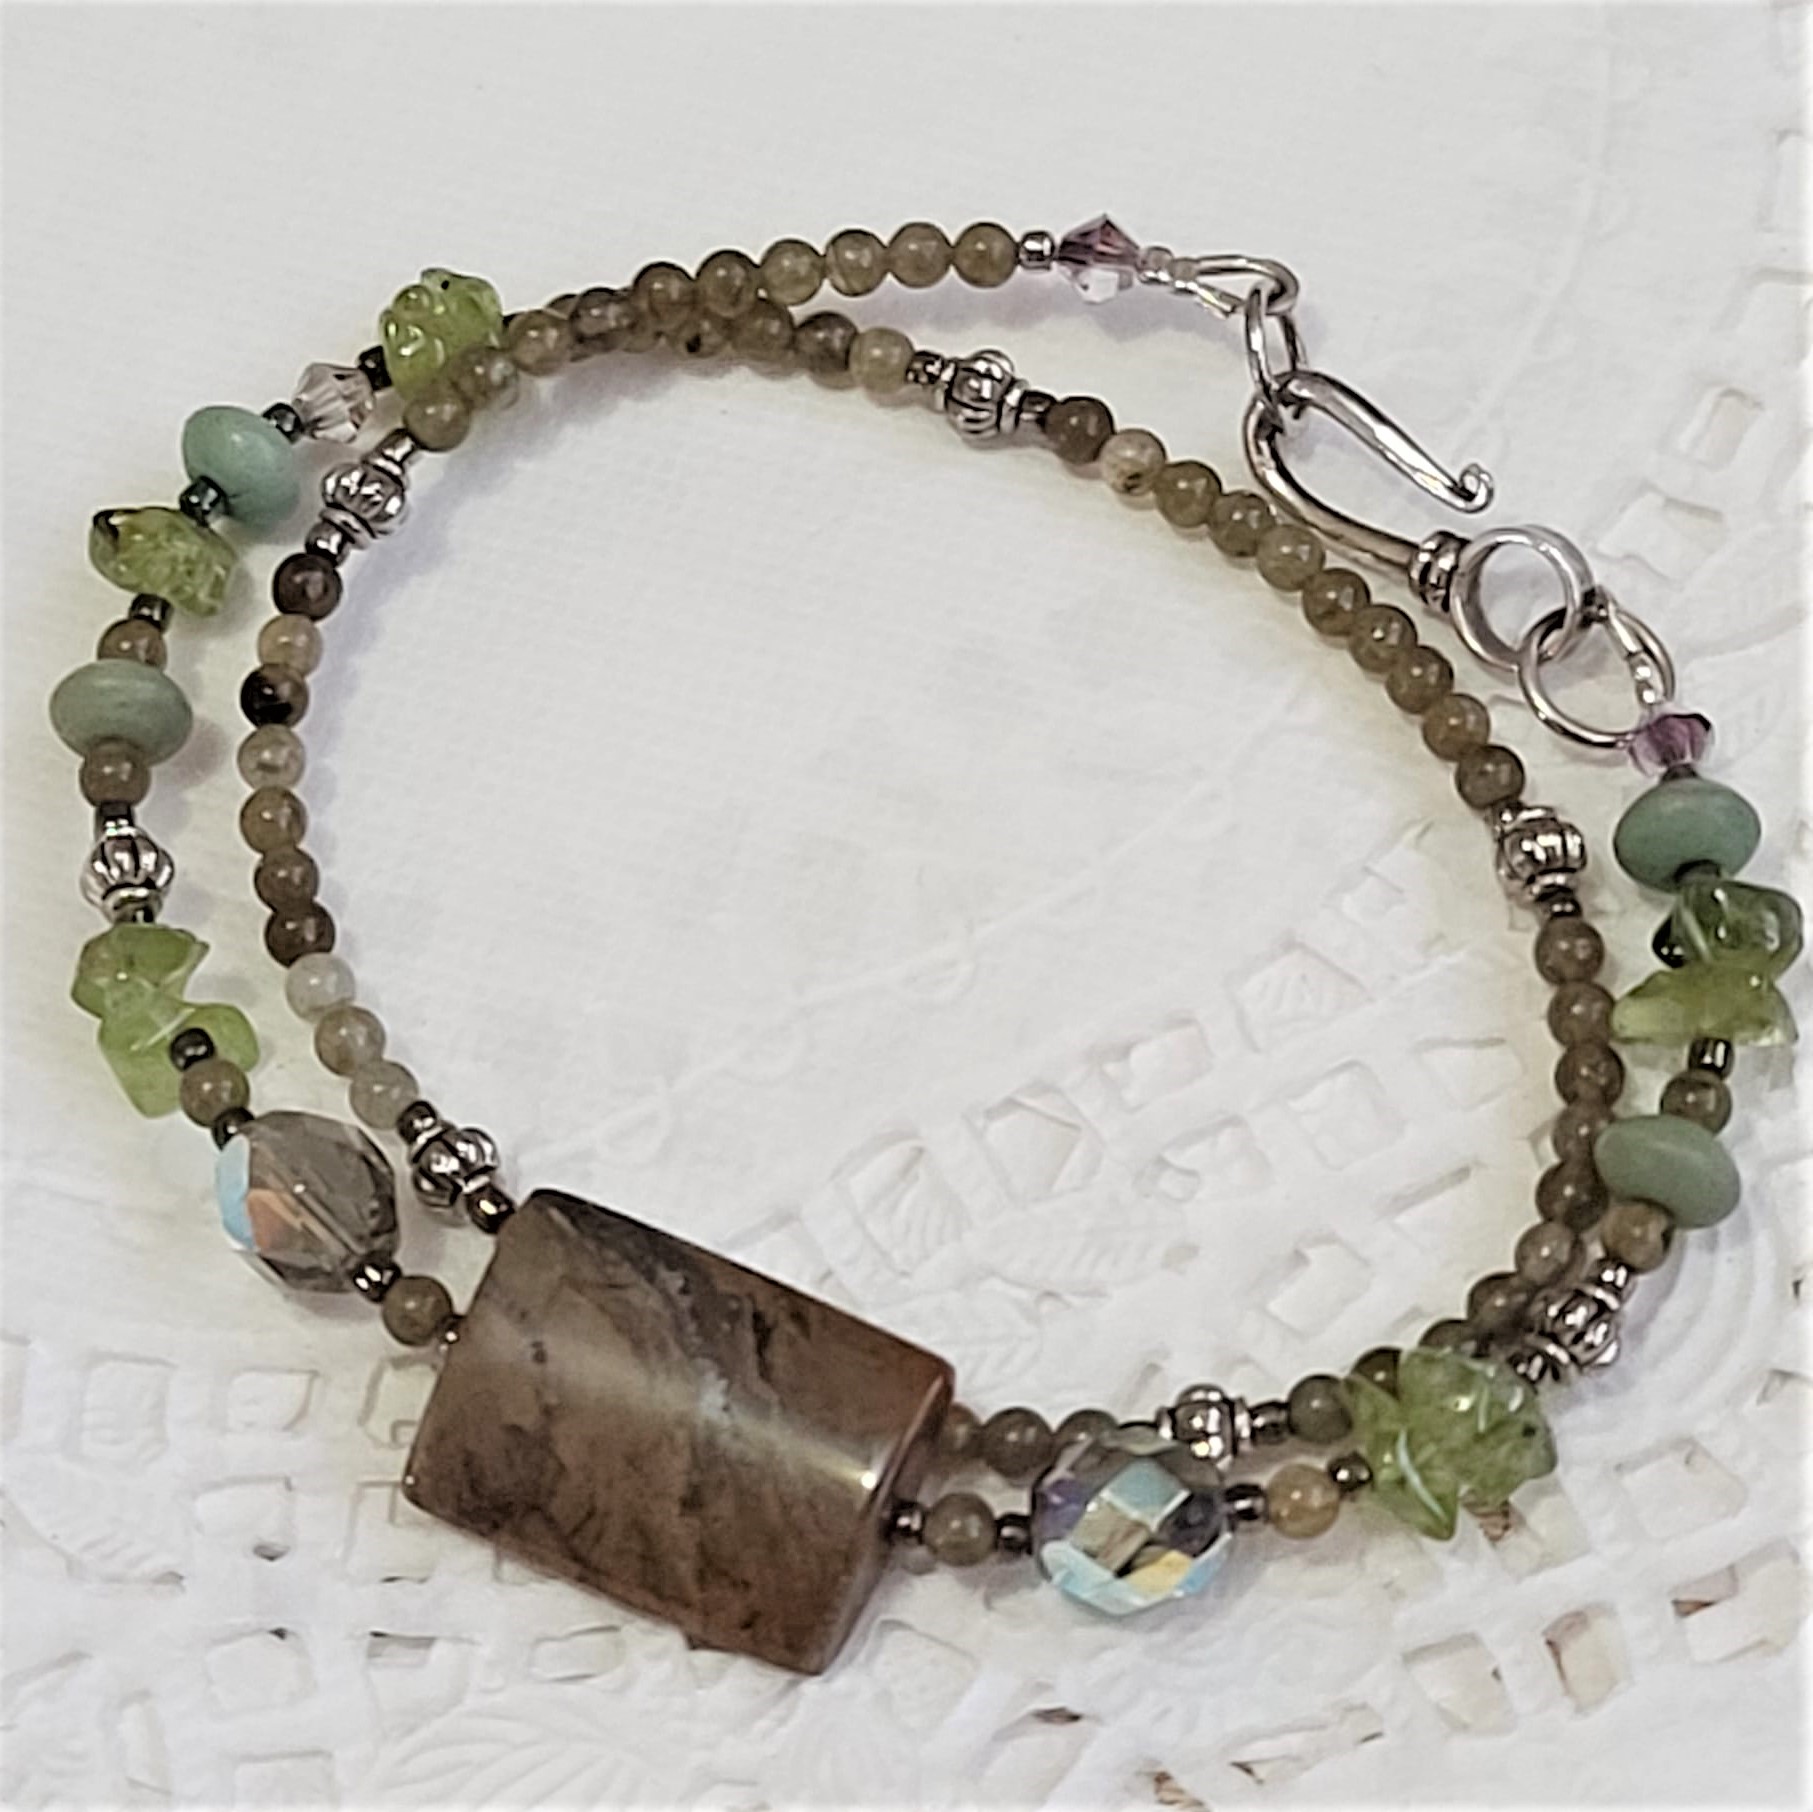 Olive quartz and peridot gemstone double wrap bracelet